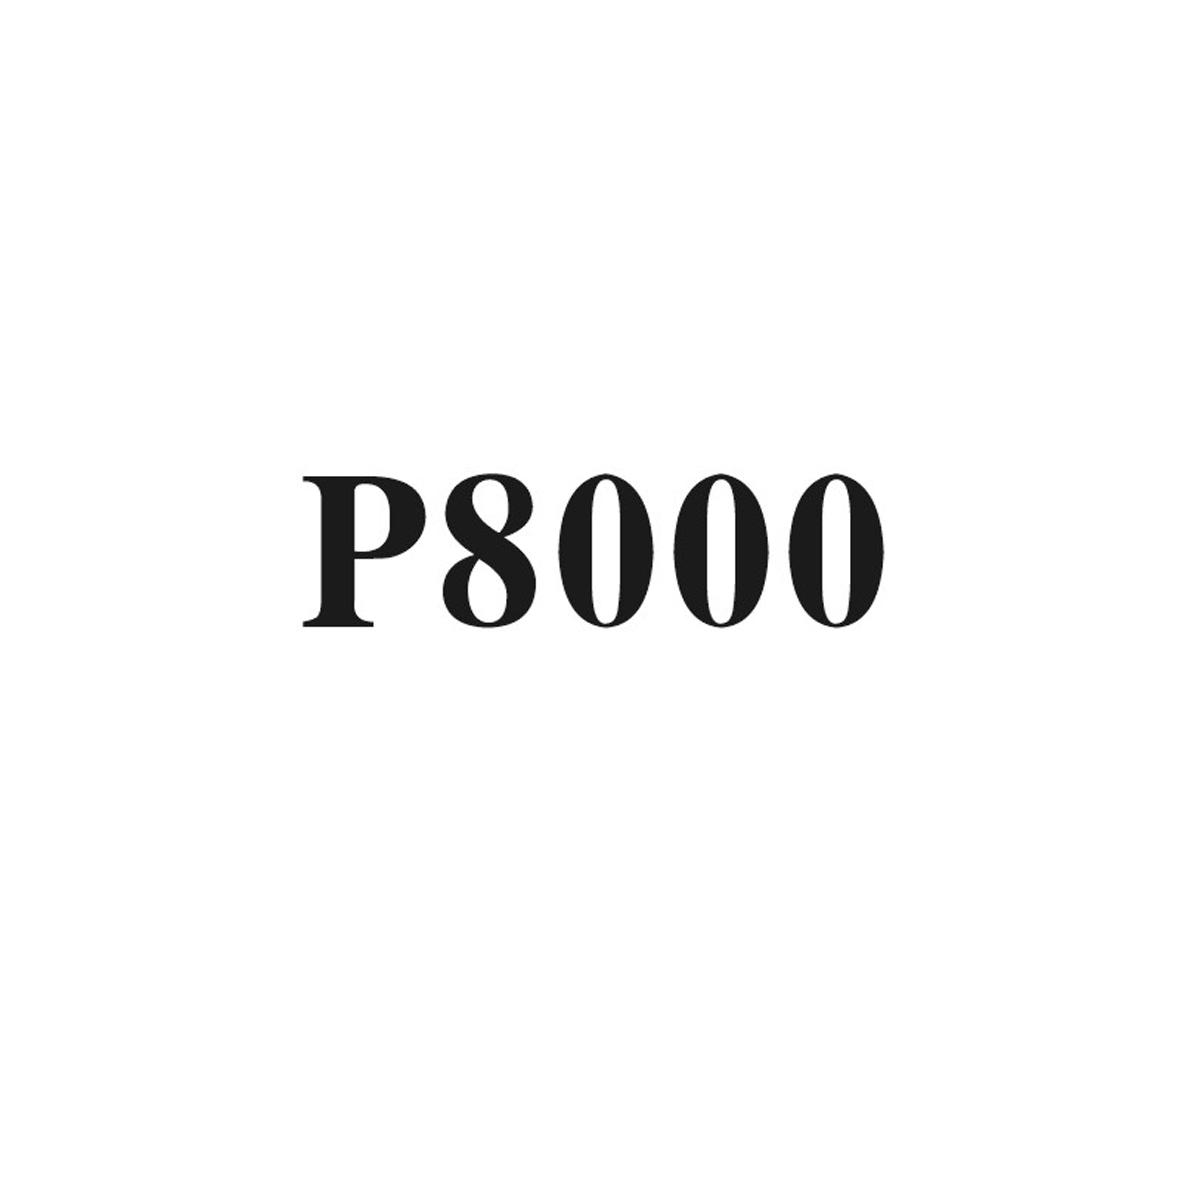 P8000